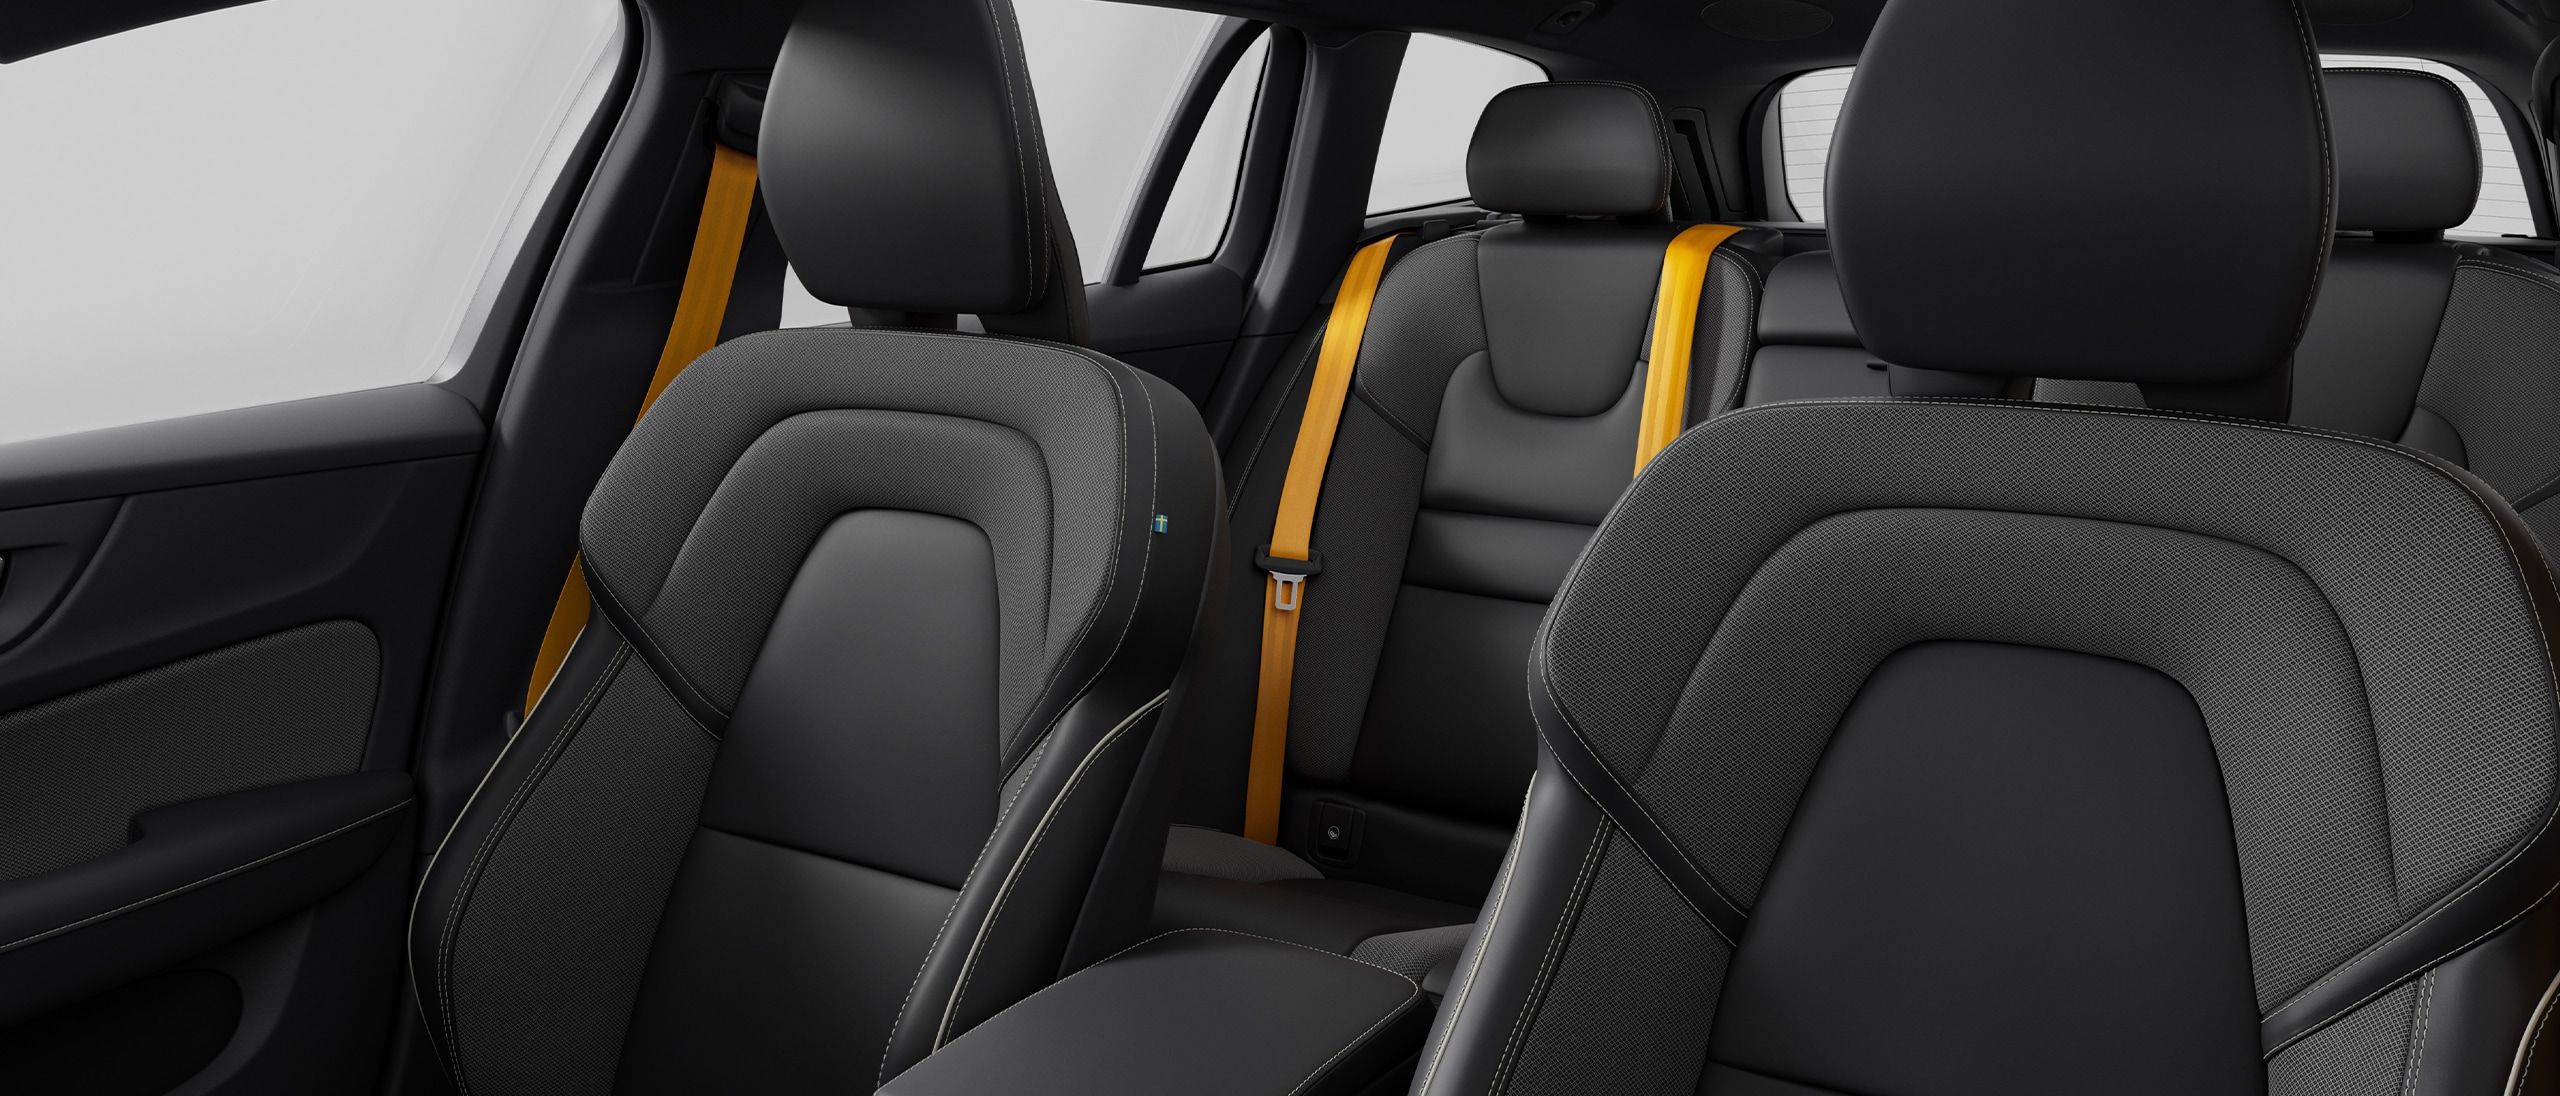 Cabin interior of Volvo V60 Recharge plug-in hybrid.